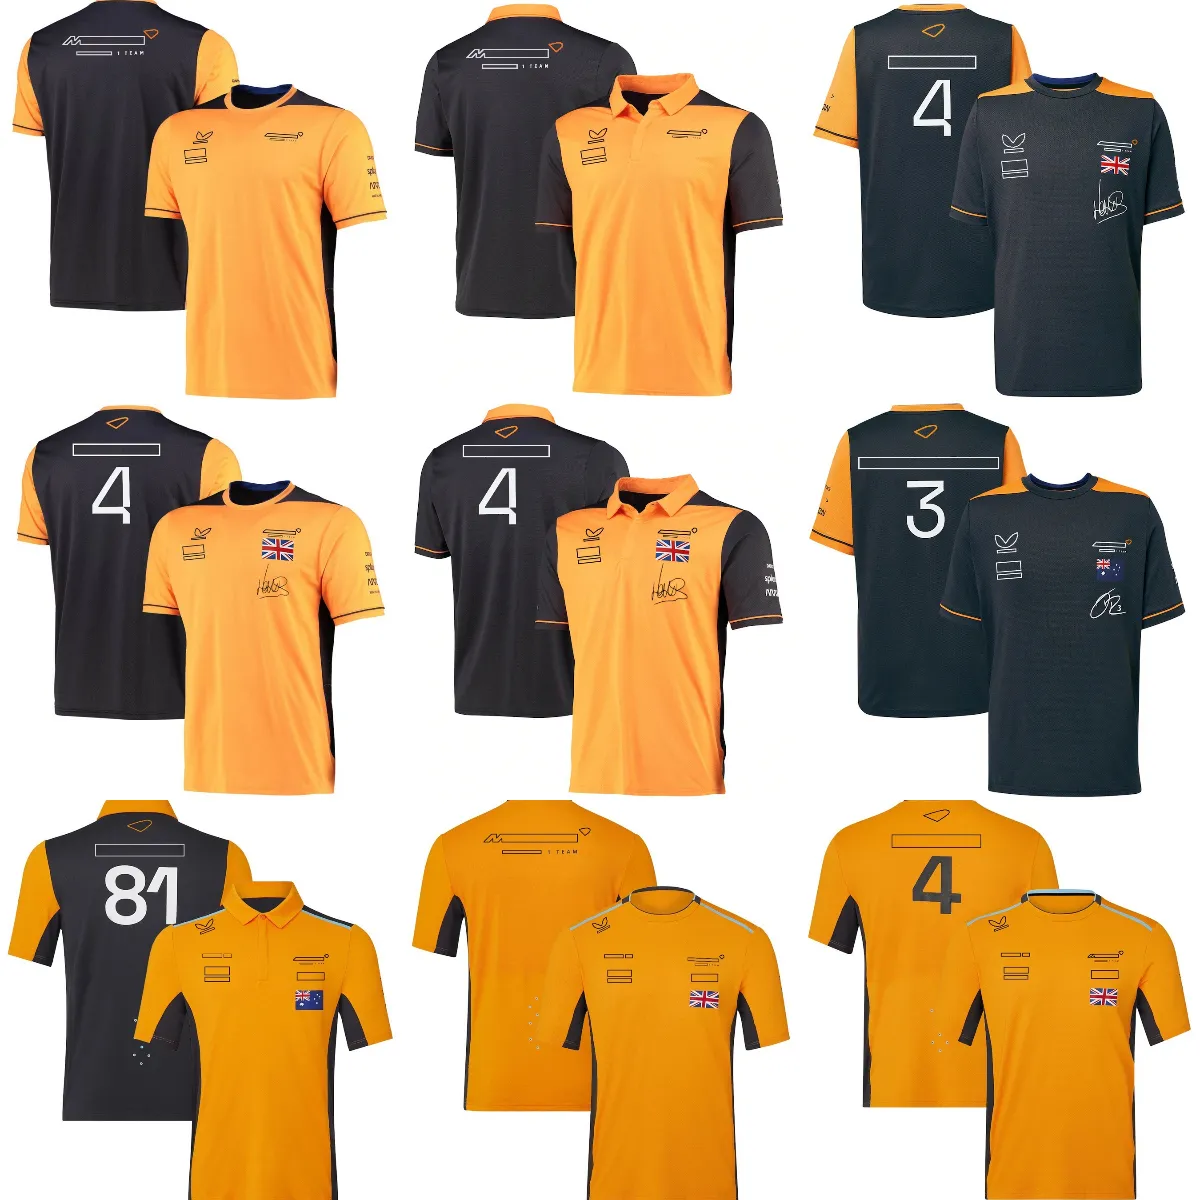 Camiseta de Fórmula 1 2022-2023, Polo del equipo F1, camiseta de deportes de competición, Jersey transpirable, camiseta estampada de marca de carrera de verano para hombre